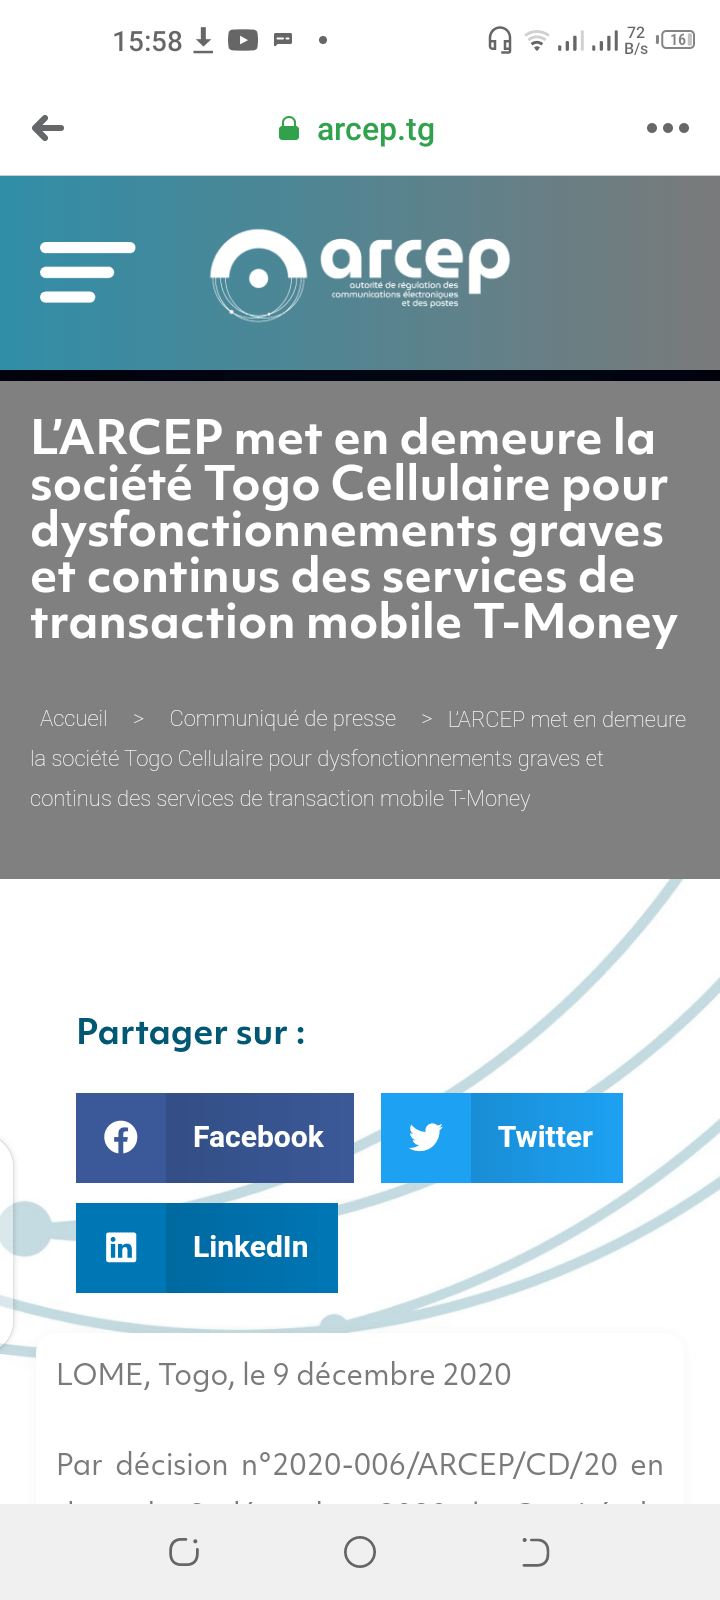 L’ARCEP met en demeure la société Togo Cellulaire pour dysfonctionnements graves et continus des services de transaction mobile T-Money